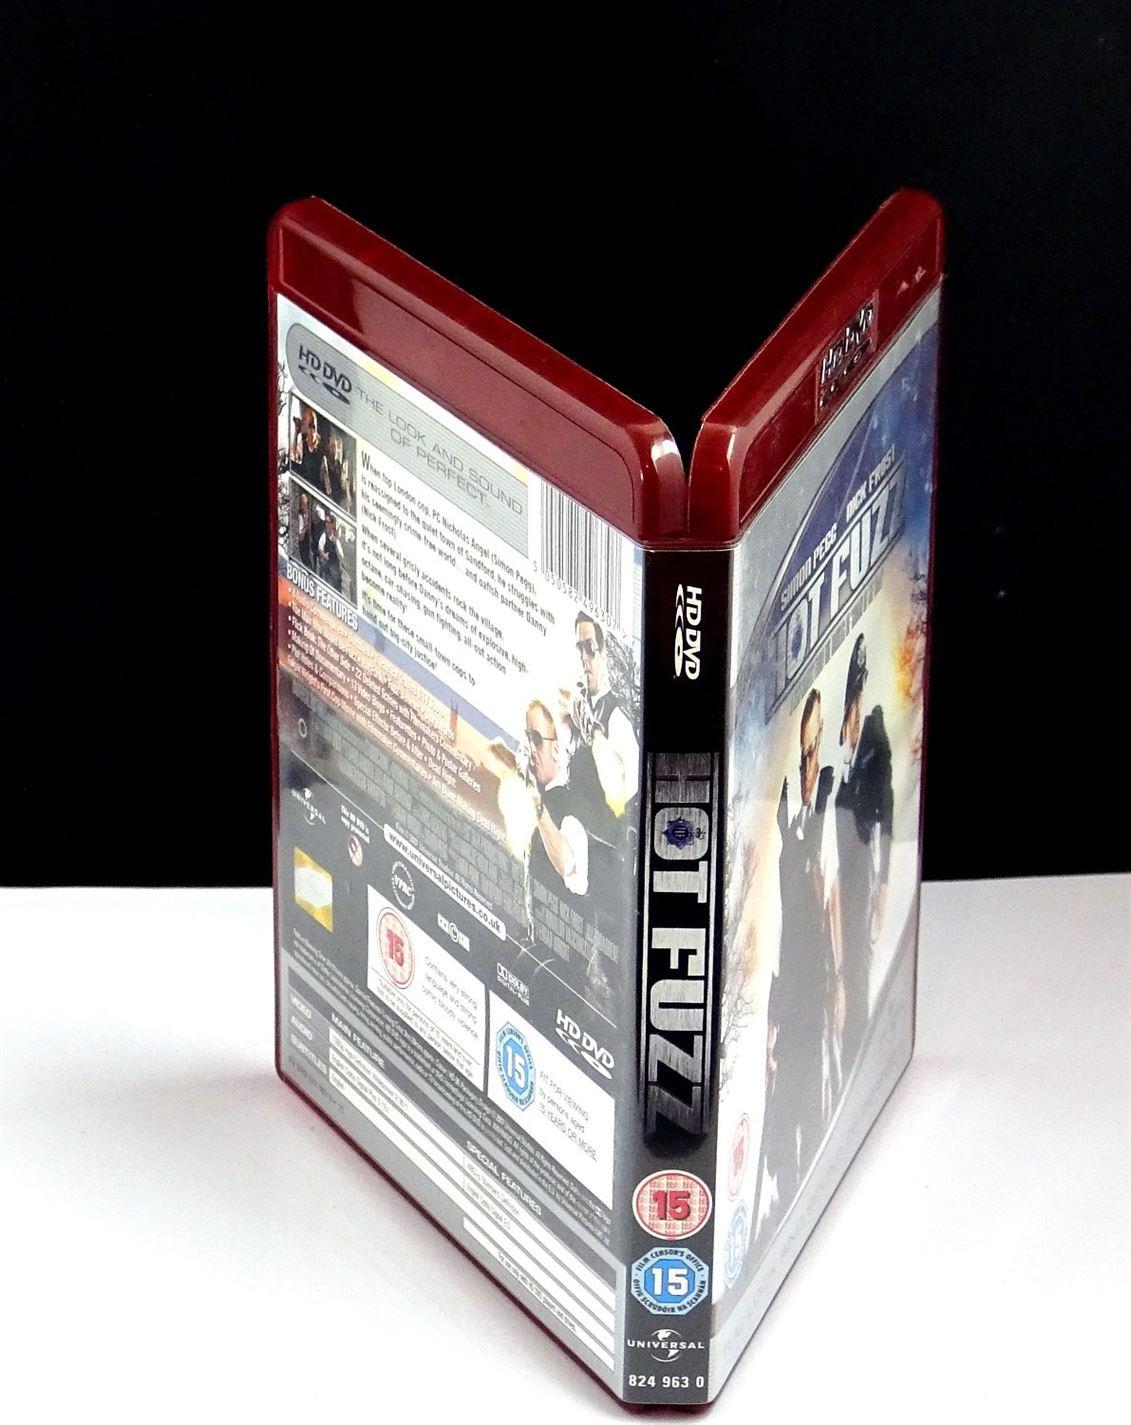 Hot Fuzz (HD DVD) - UK Seller